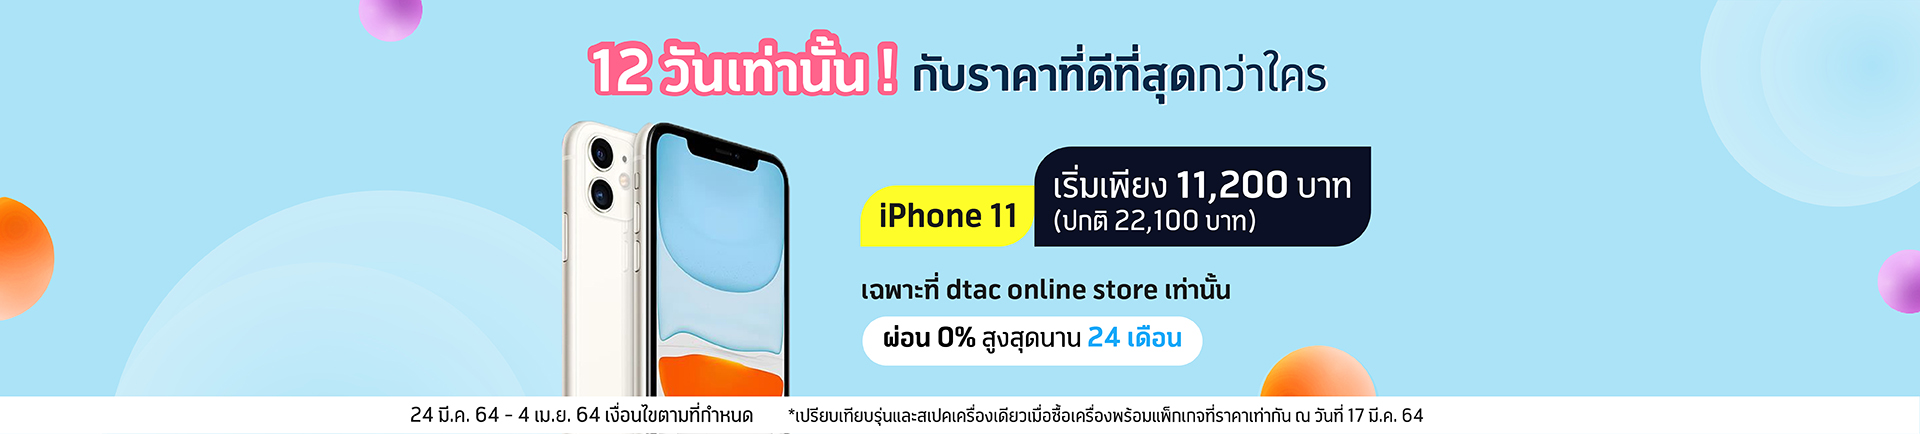 สั่งซื้อ iPhone 11 ที่ dtac online store